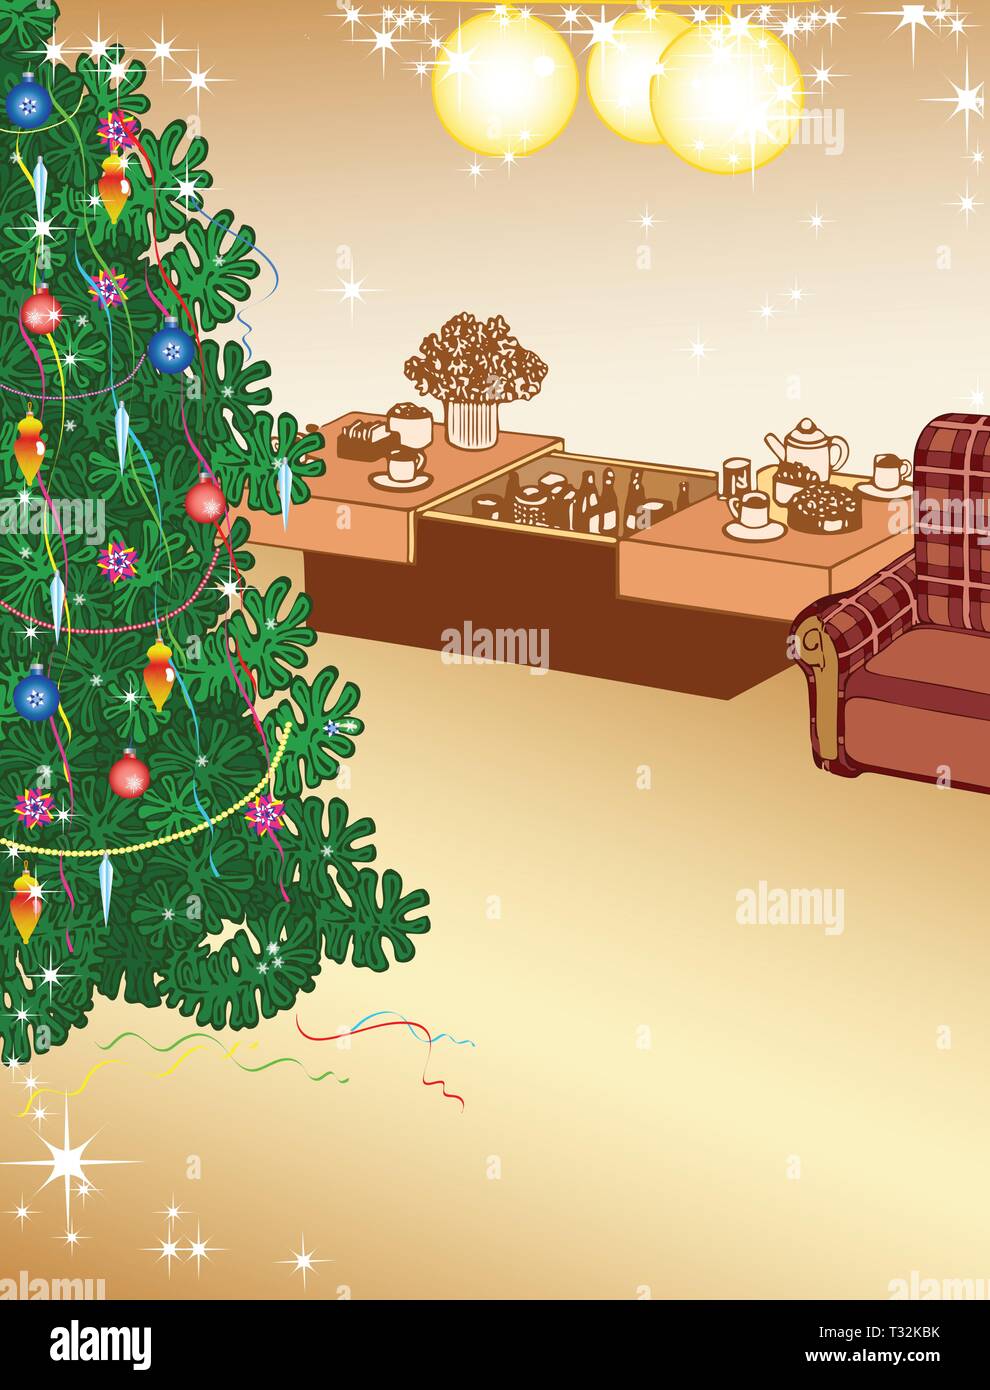 La figura mostra la parte interna di una camera in cui vi è un albero di Natale e decorazioni. Vi è un posto per il testo, eseguita sui laici separato Illustrazione Vettoriale